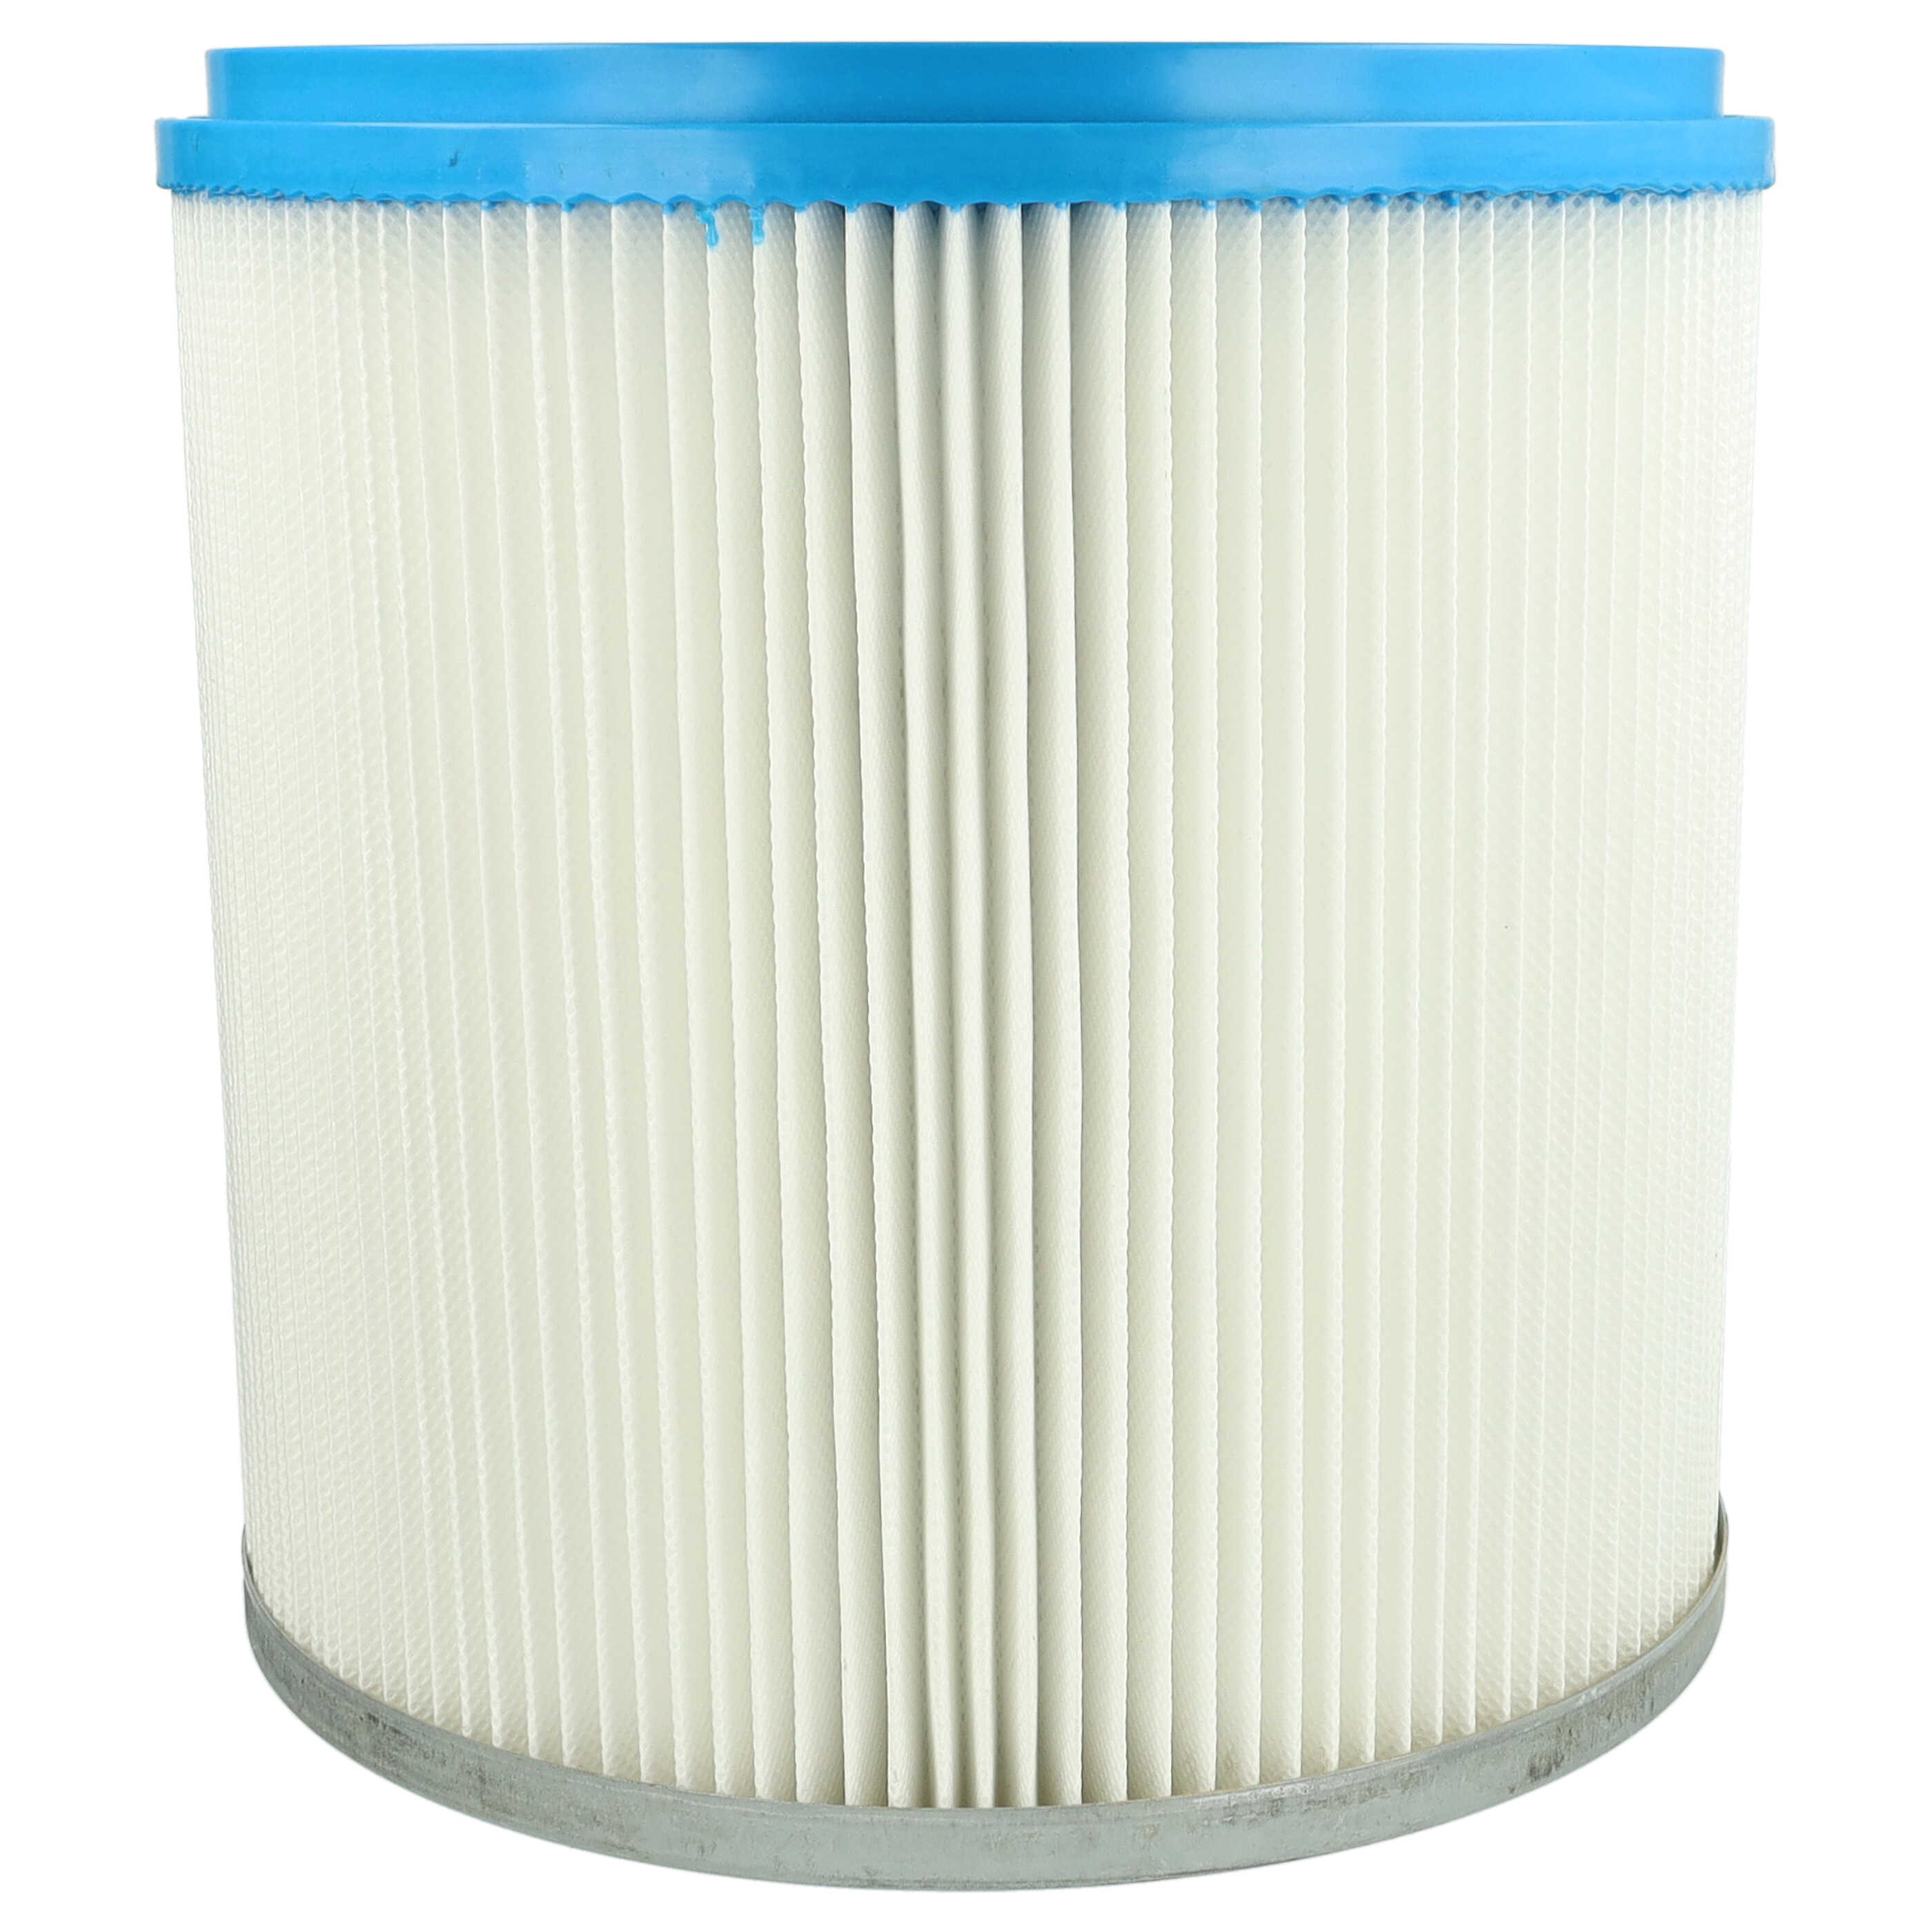 Filtro sostituisce Bosch 2607432008 per aspirapolvere - filtro cartucce, bianco / argento / blu